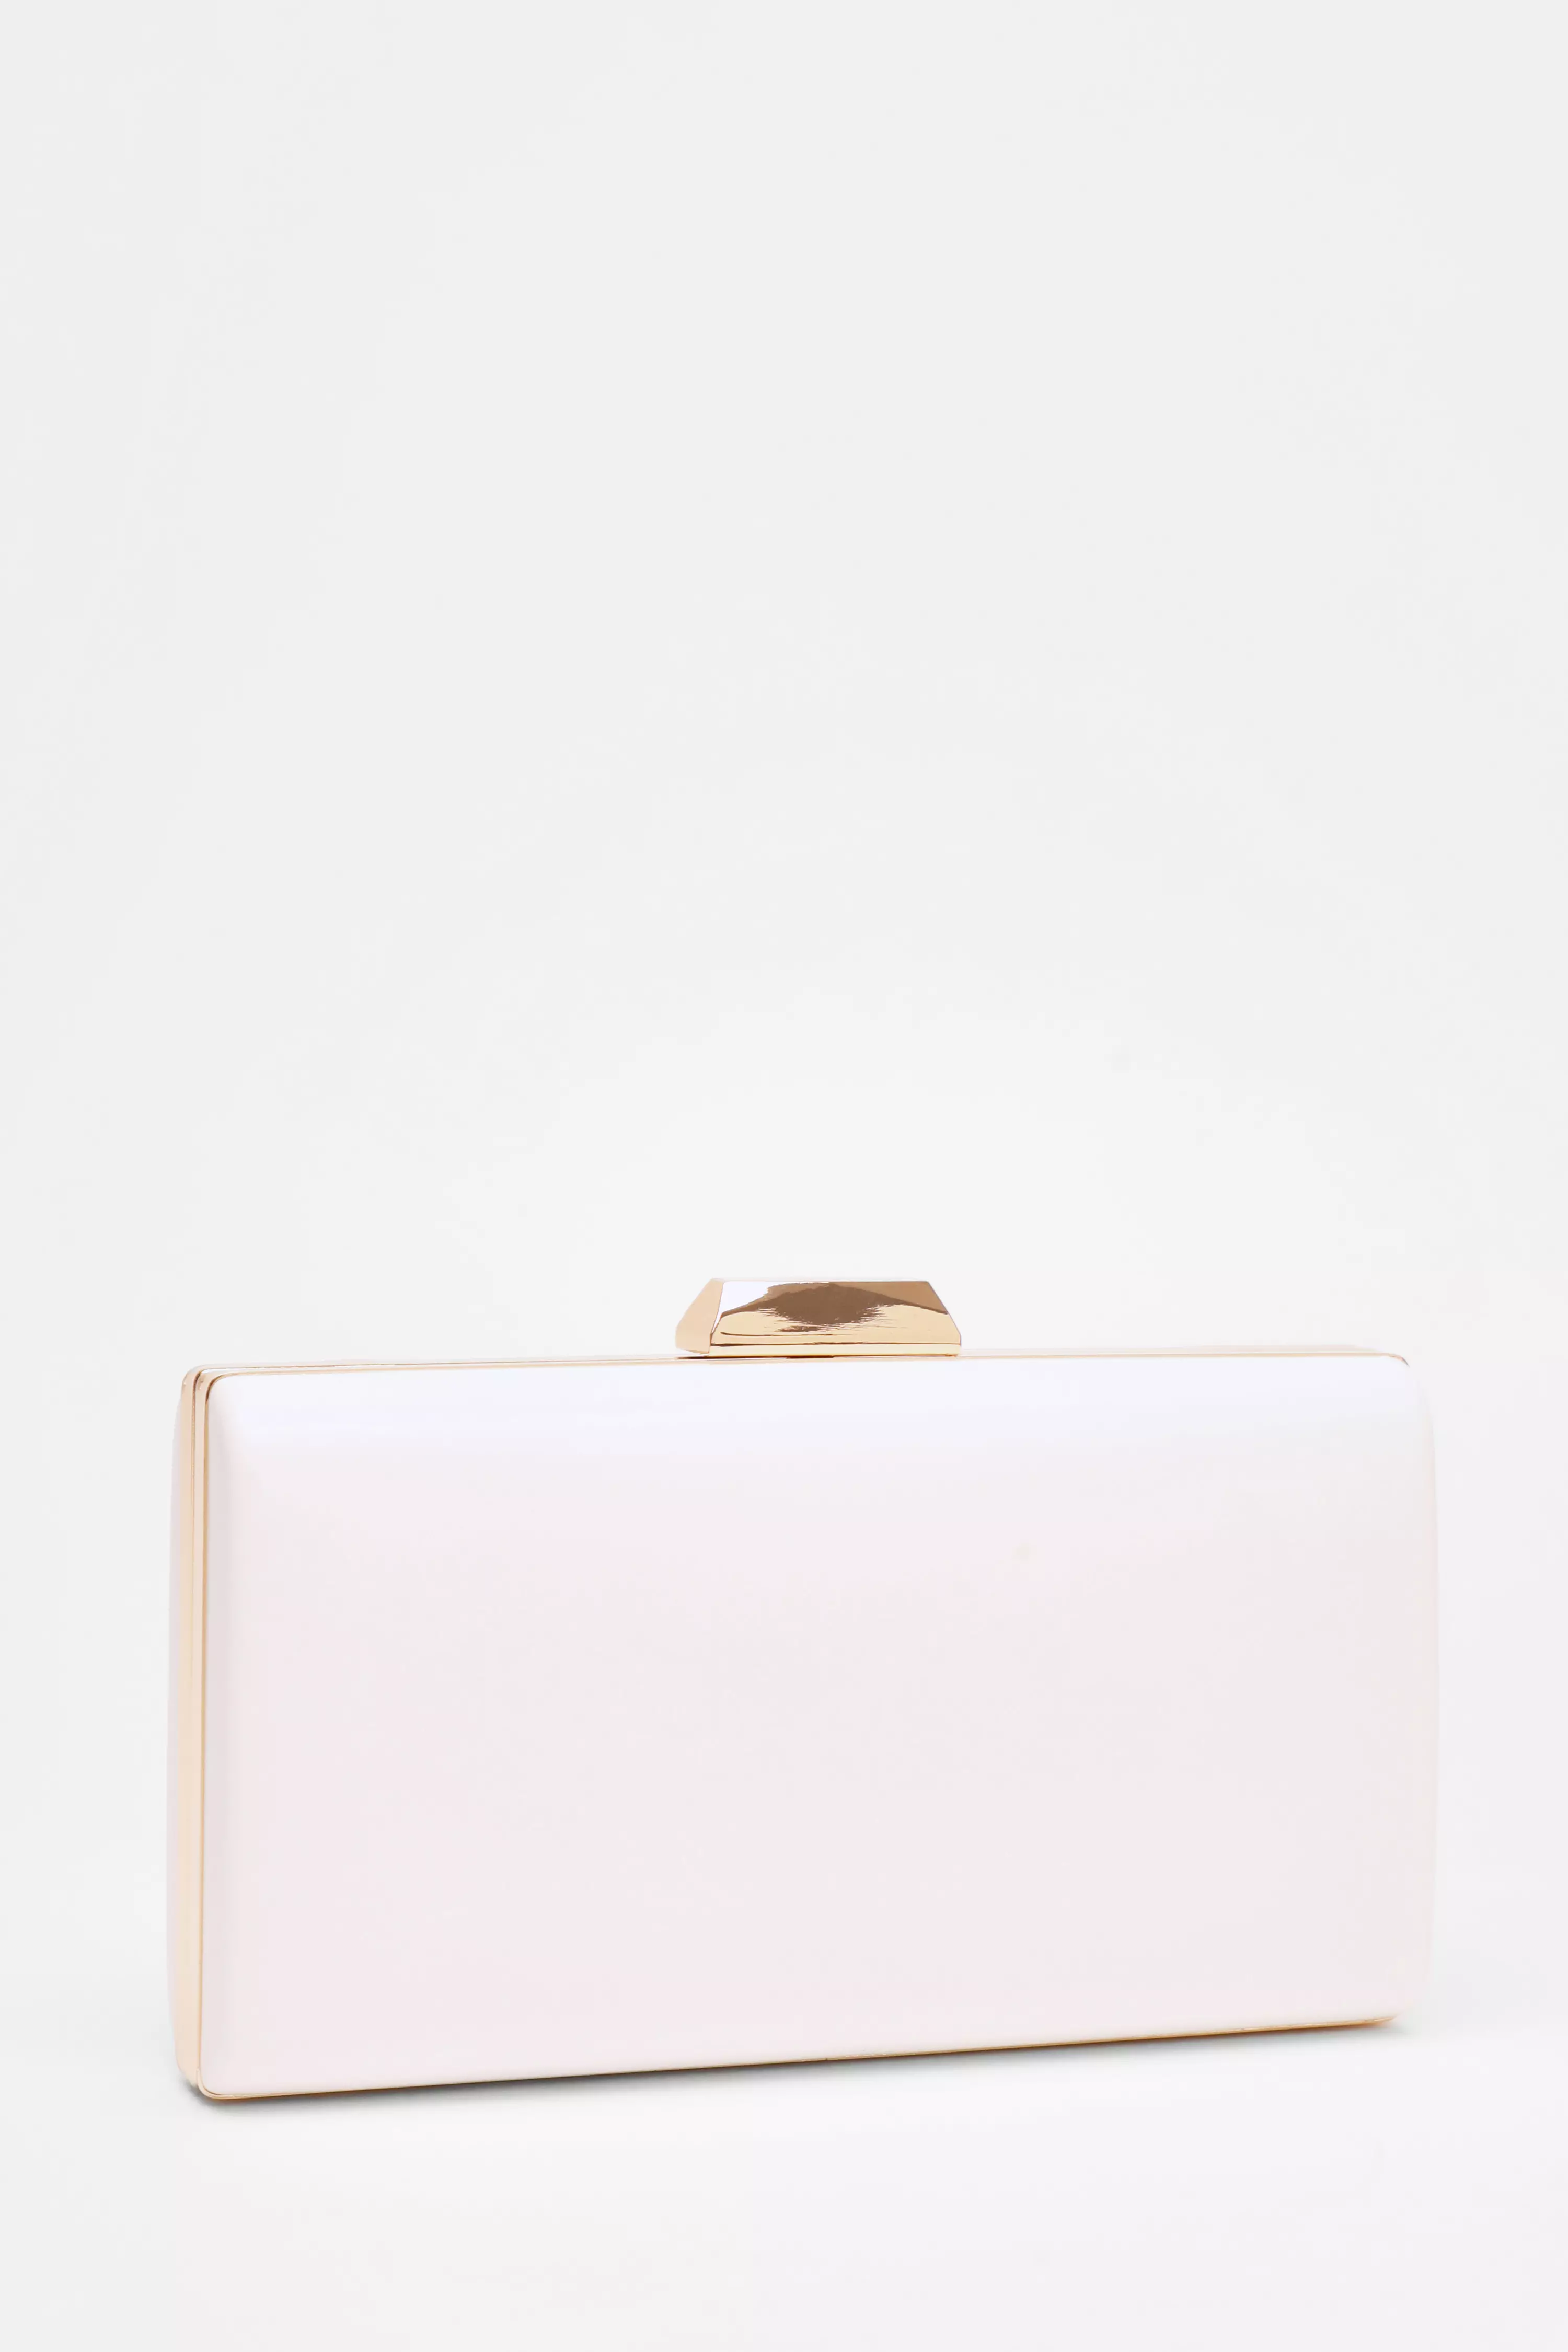 White Box Bag